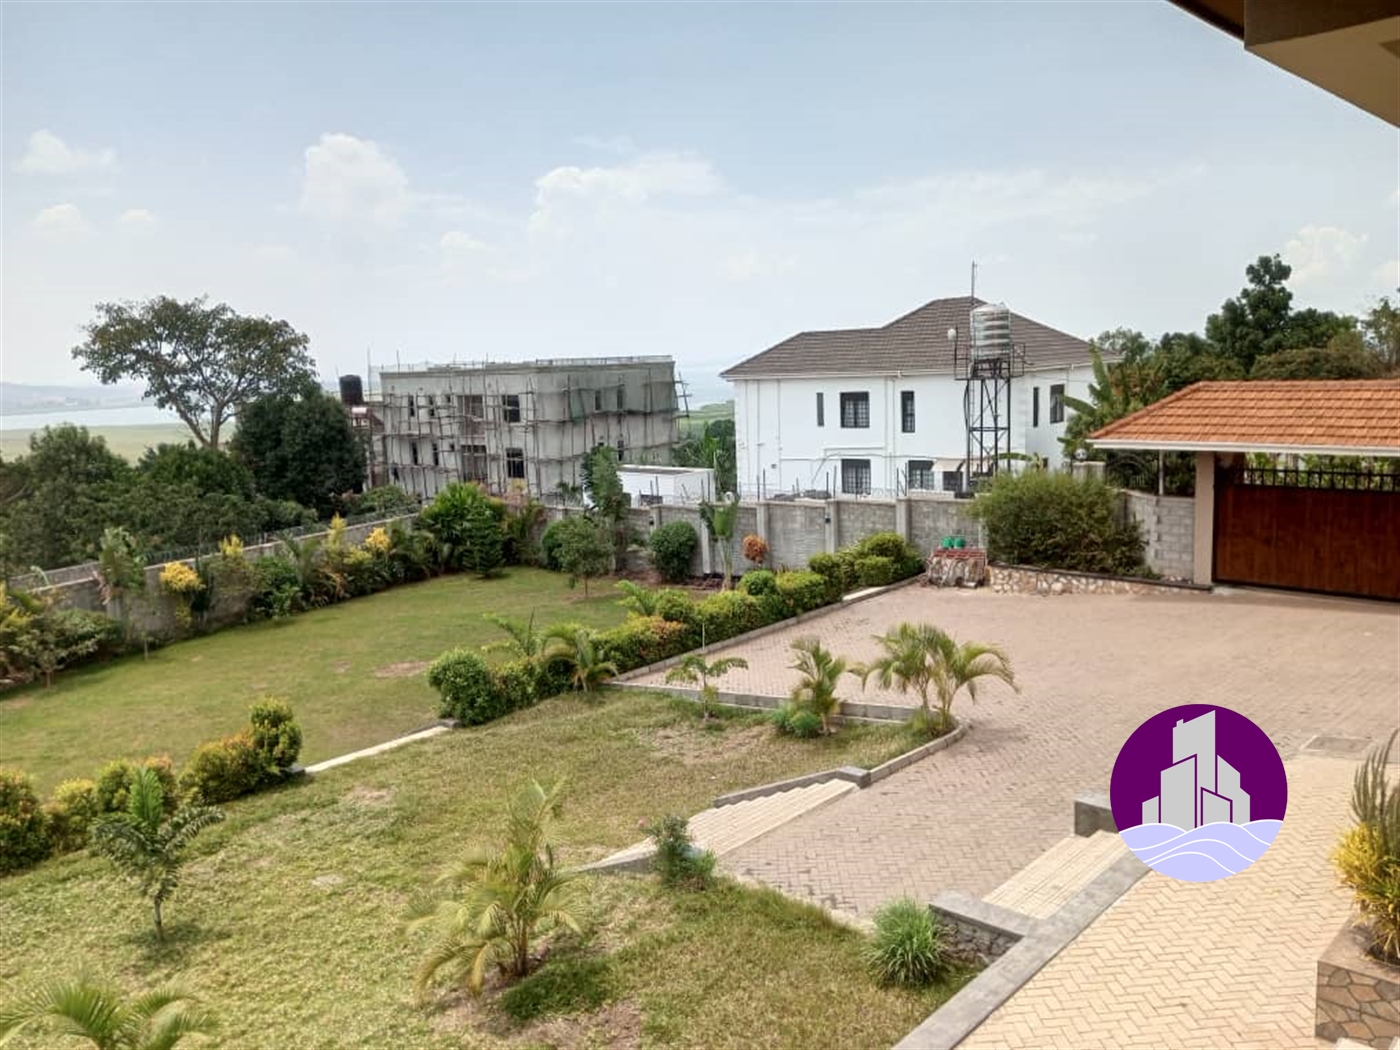 Mansion for rent in Kajjansi Kampala